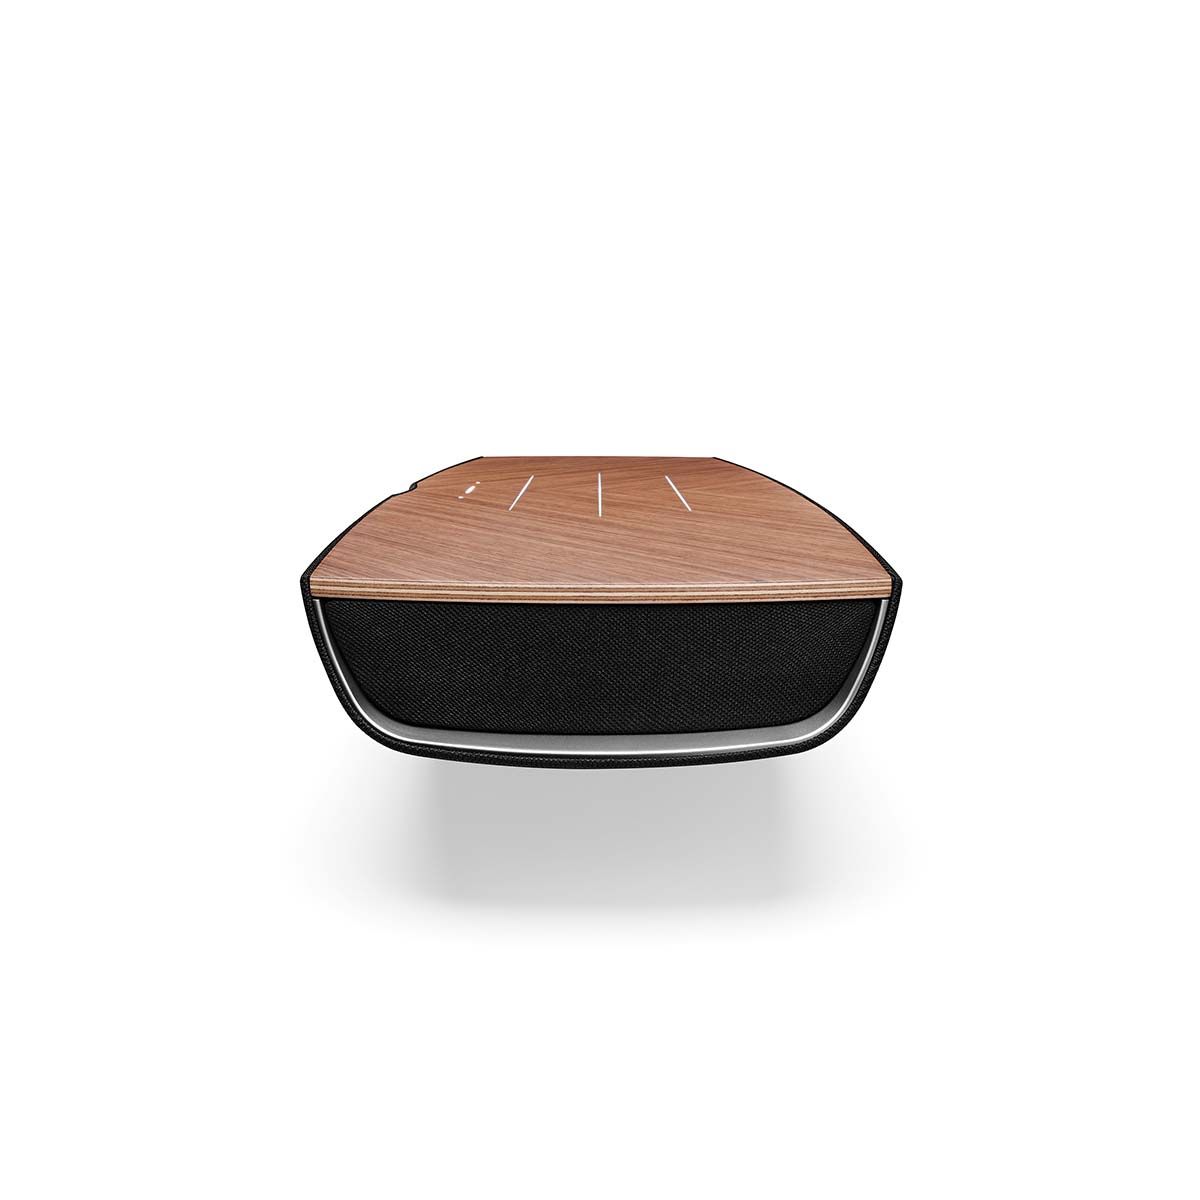 Sonus Faber Omnia Wireless Smart Speaker, Walnut, side view